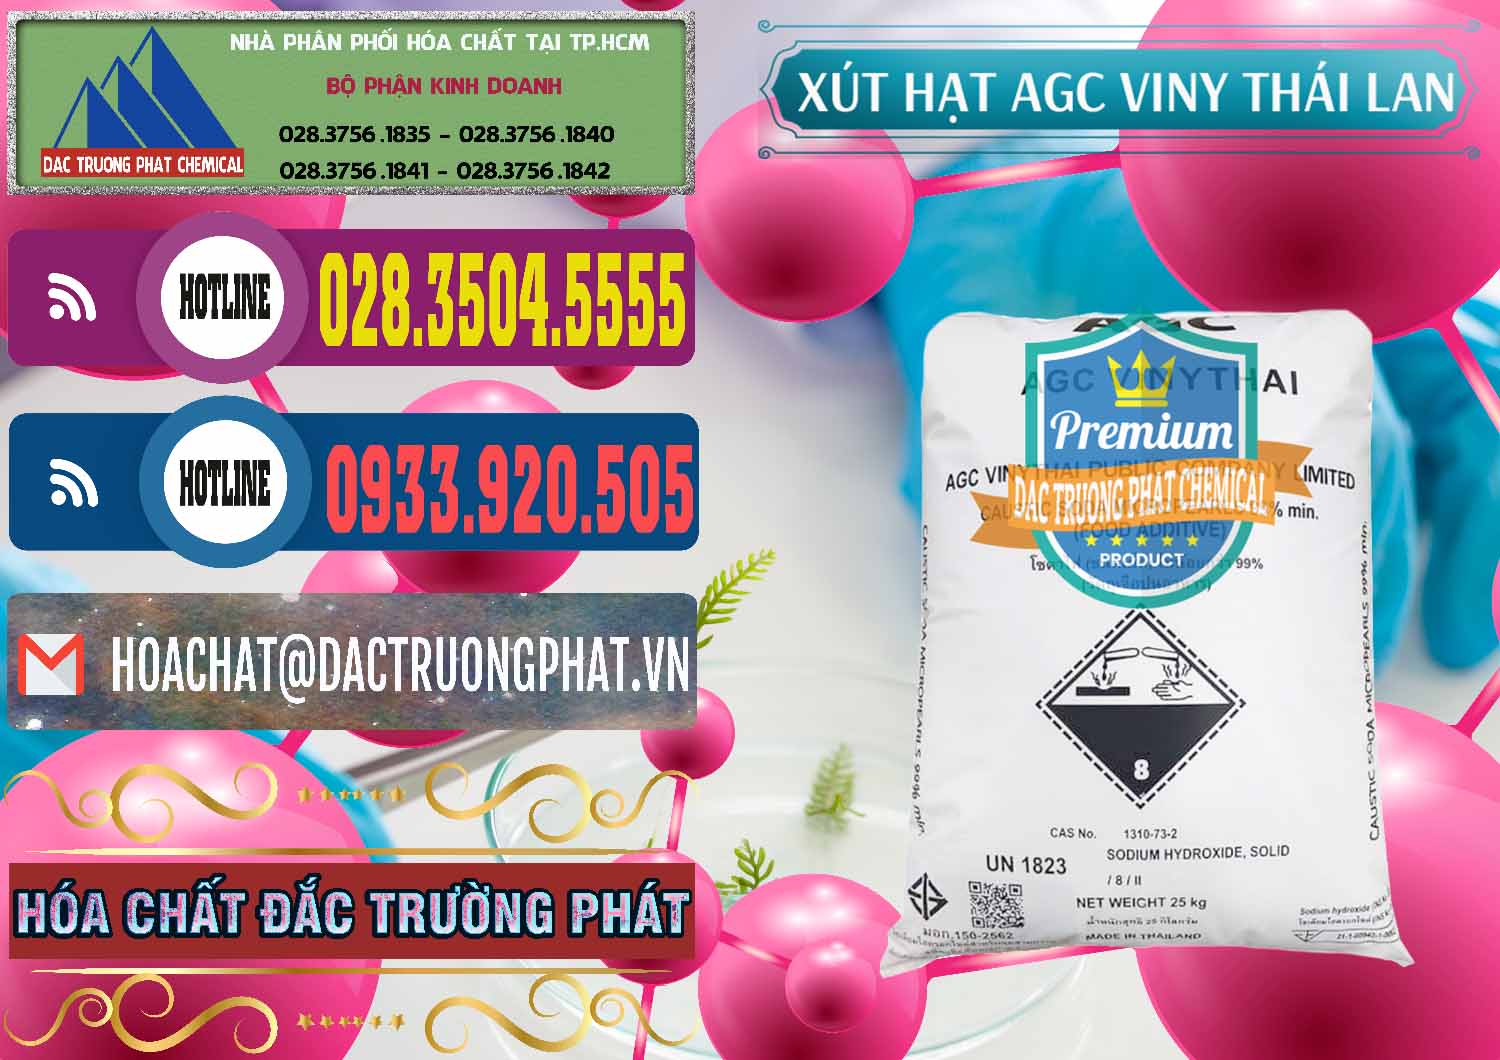 Cty chuyên bán và phân phối Xút Hạt - NaOH Bột 99% AGC Viny Thái Lan - 0399 - Cung cấp _ bán hóa chất tại TP.HCM - muabanhoachat.com.vn